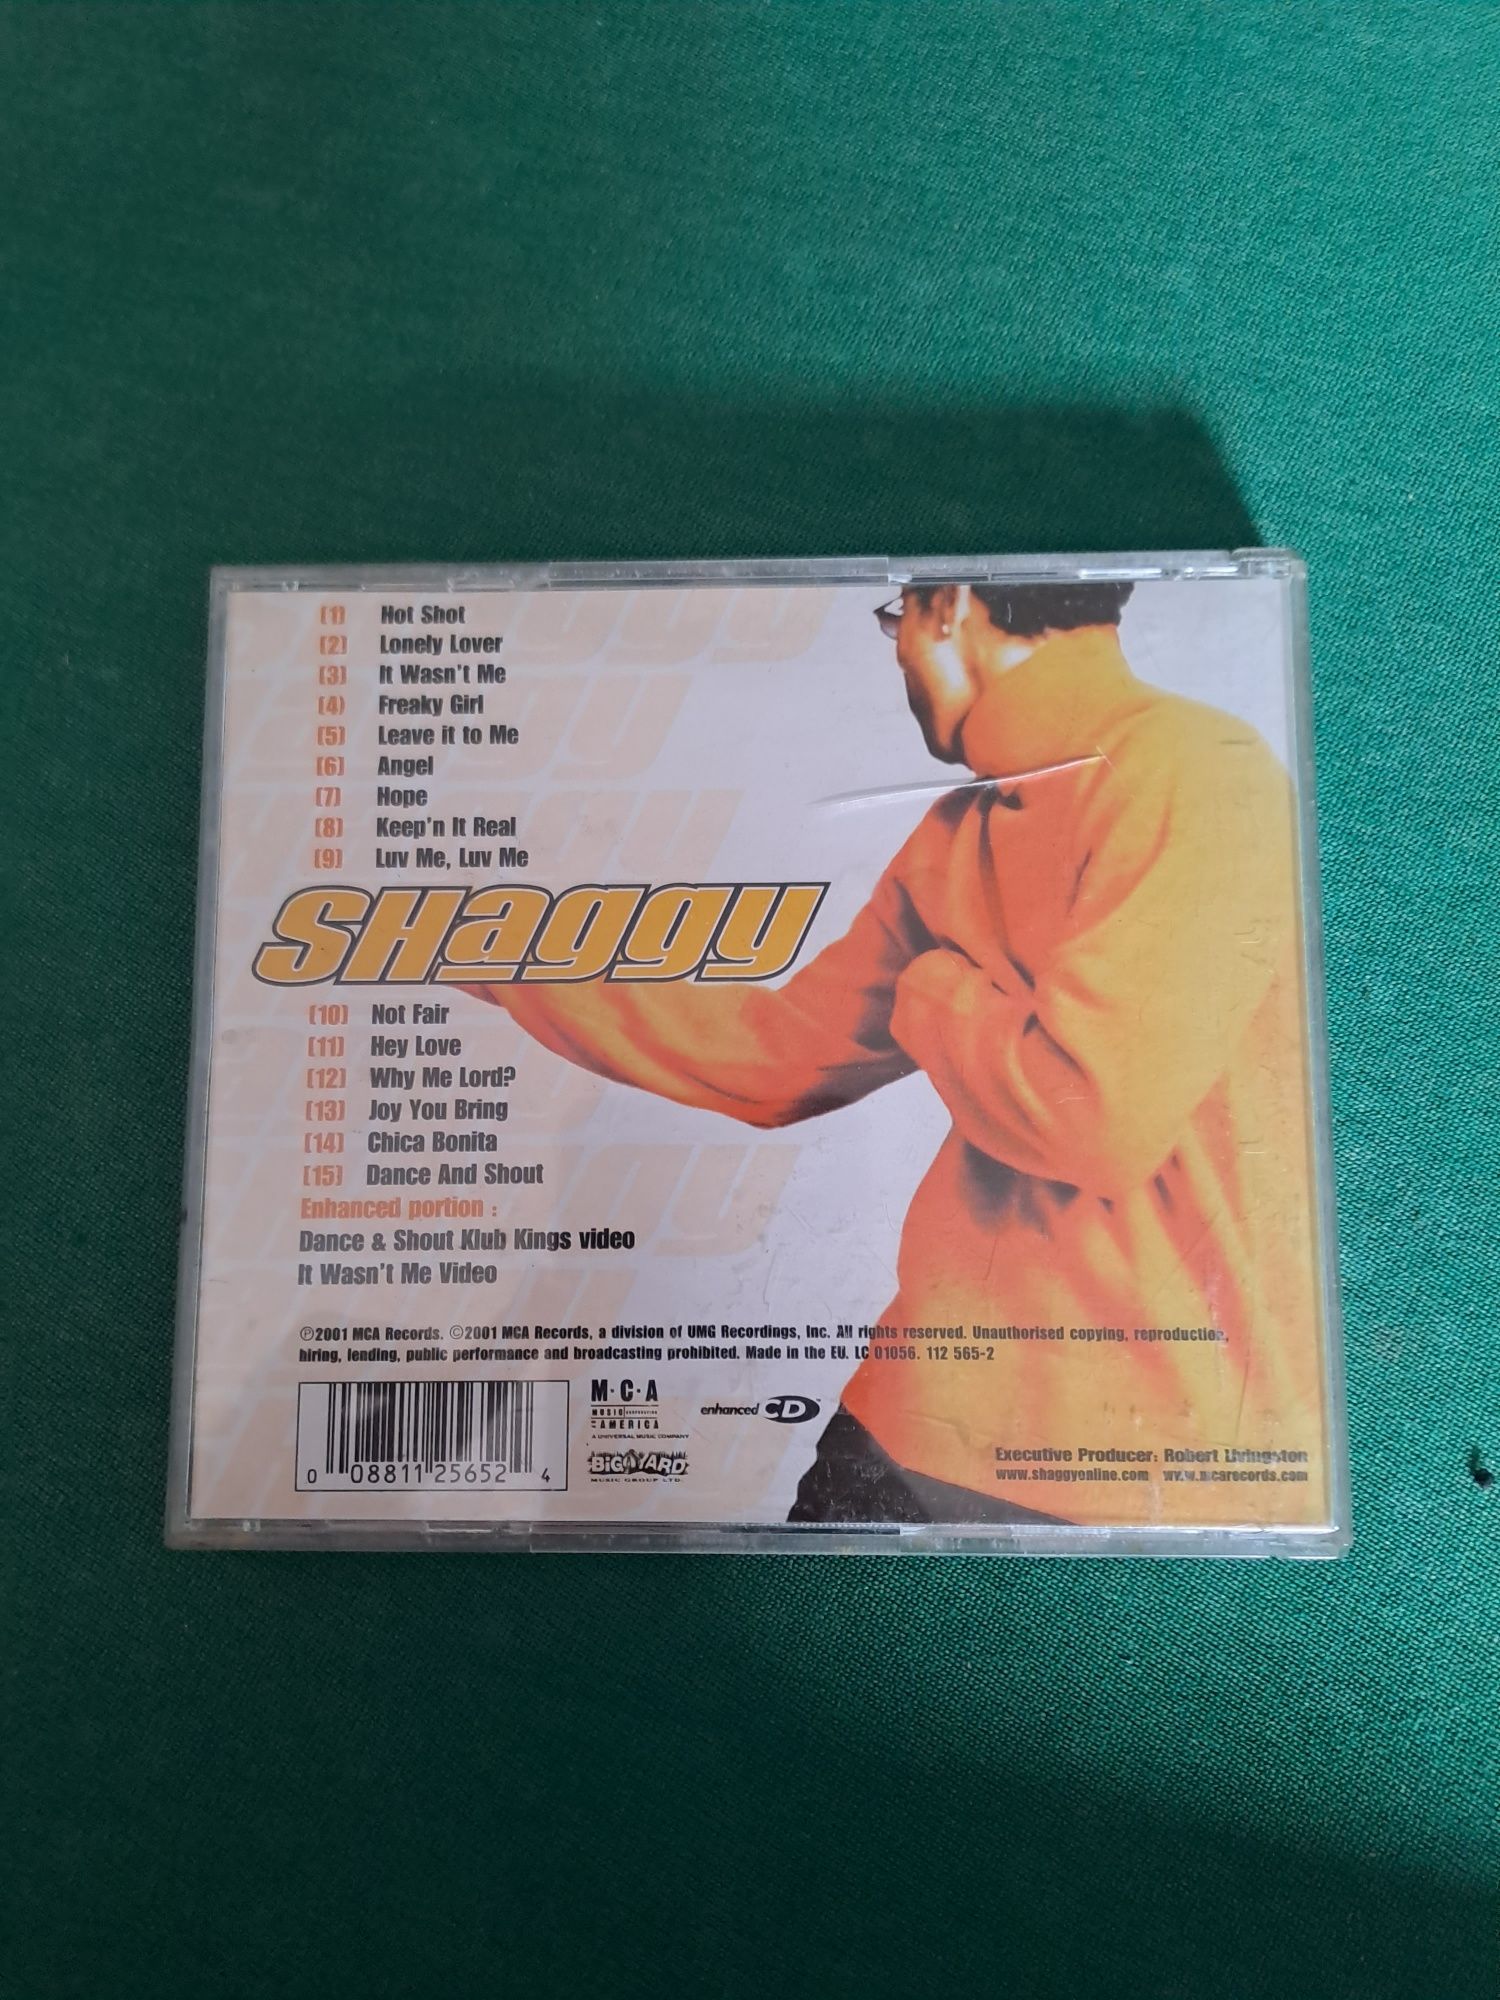 Płyta Shaggy Hot Shot